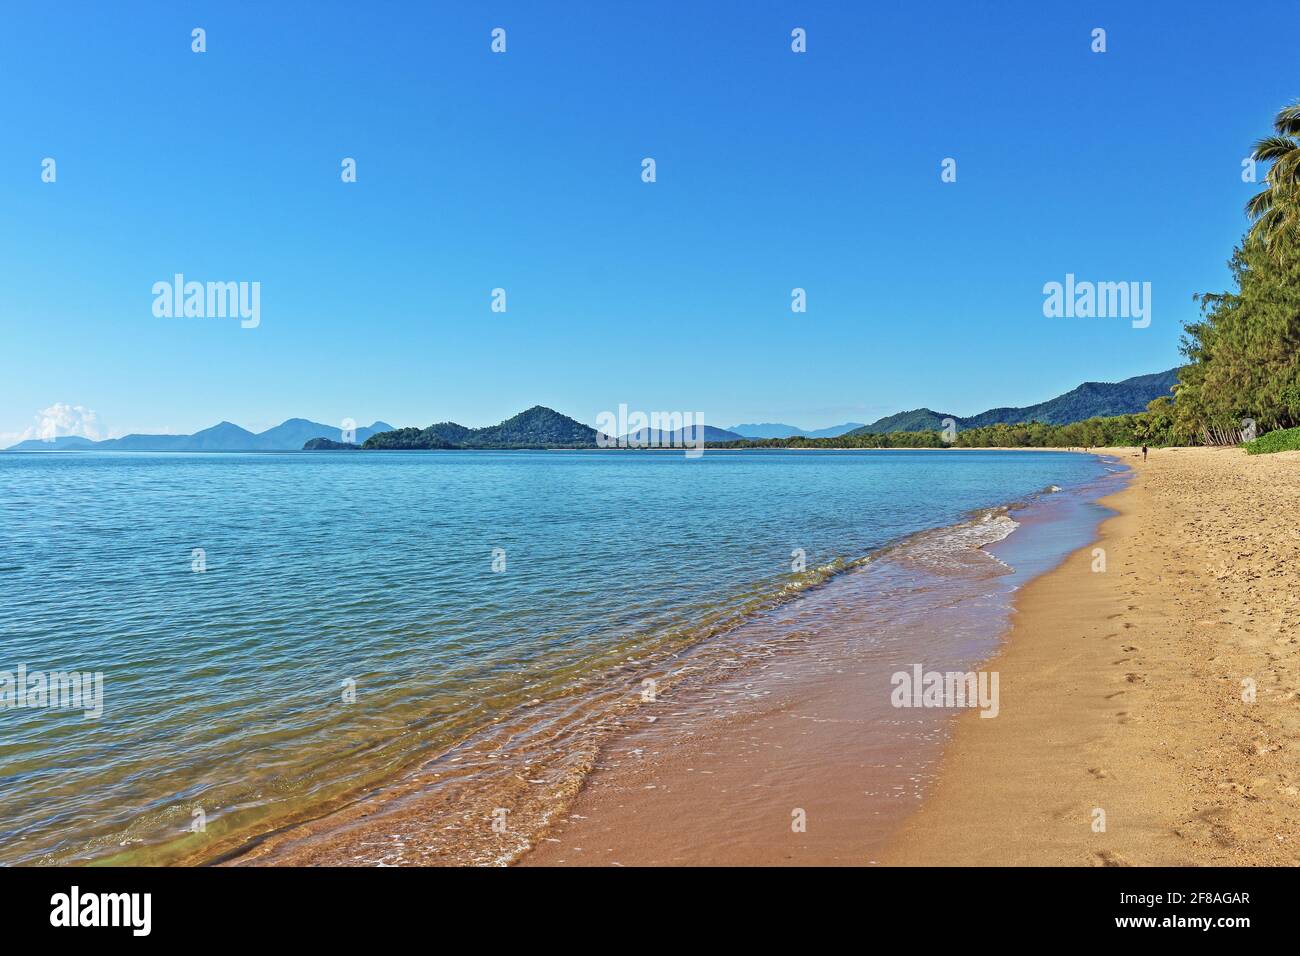 Ce matin, un ciel bleu clair et des mers calmes ont été présentés en regardant vers le sud depuis le sable en face de vivo à Palm Cove, Cairns, à l'extrême nord du Queensland, en Australie Banque D'Images